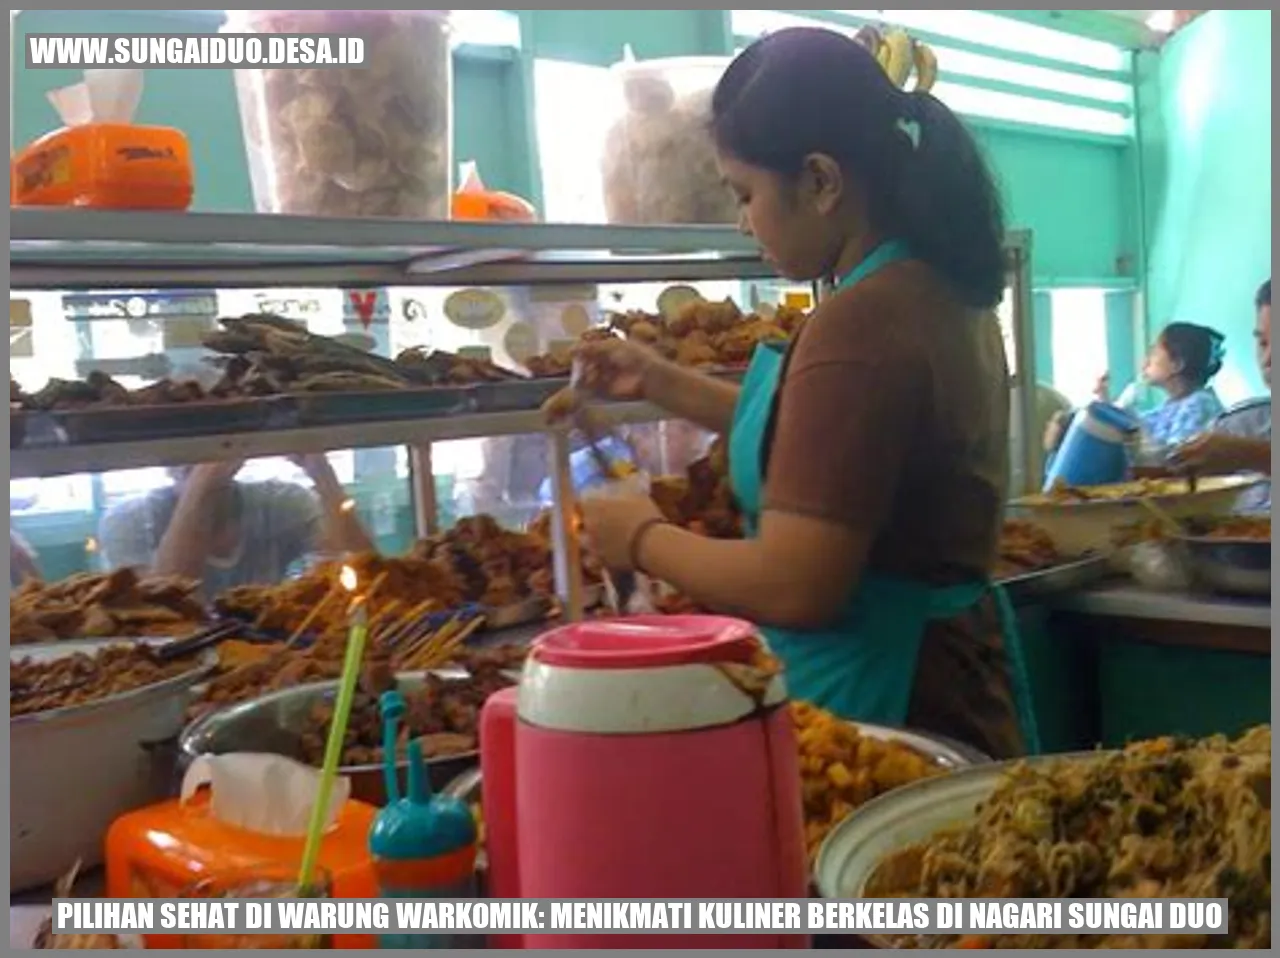 Pilihan Sehat di Warung WARKOMIK: Menikmati Kuliner Berkelas di Nagari Sungai Duo